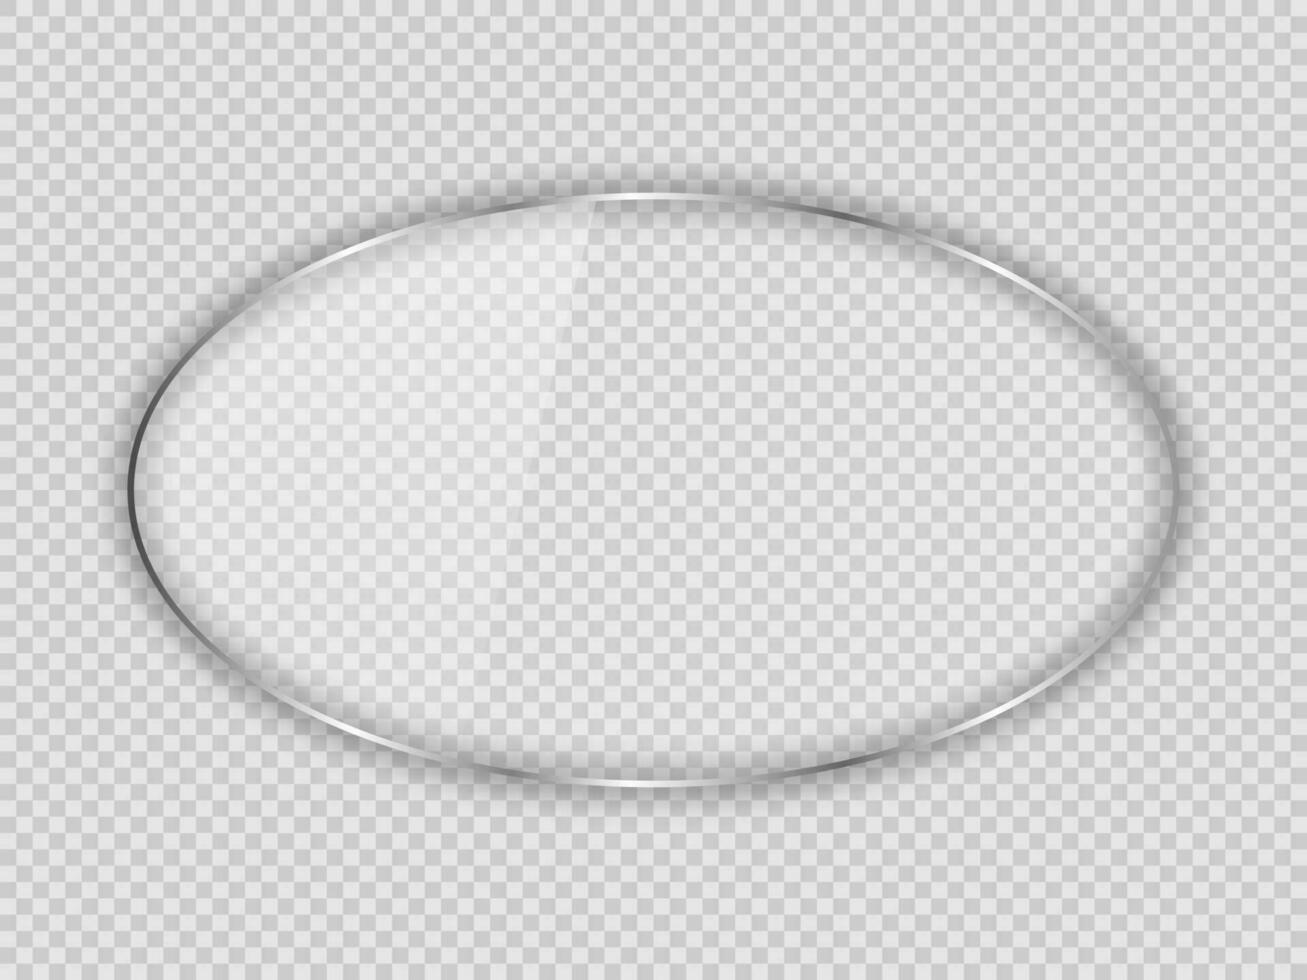 glas tallrik i oval ram isolerat på bakgrund. vektor illustration.